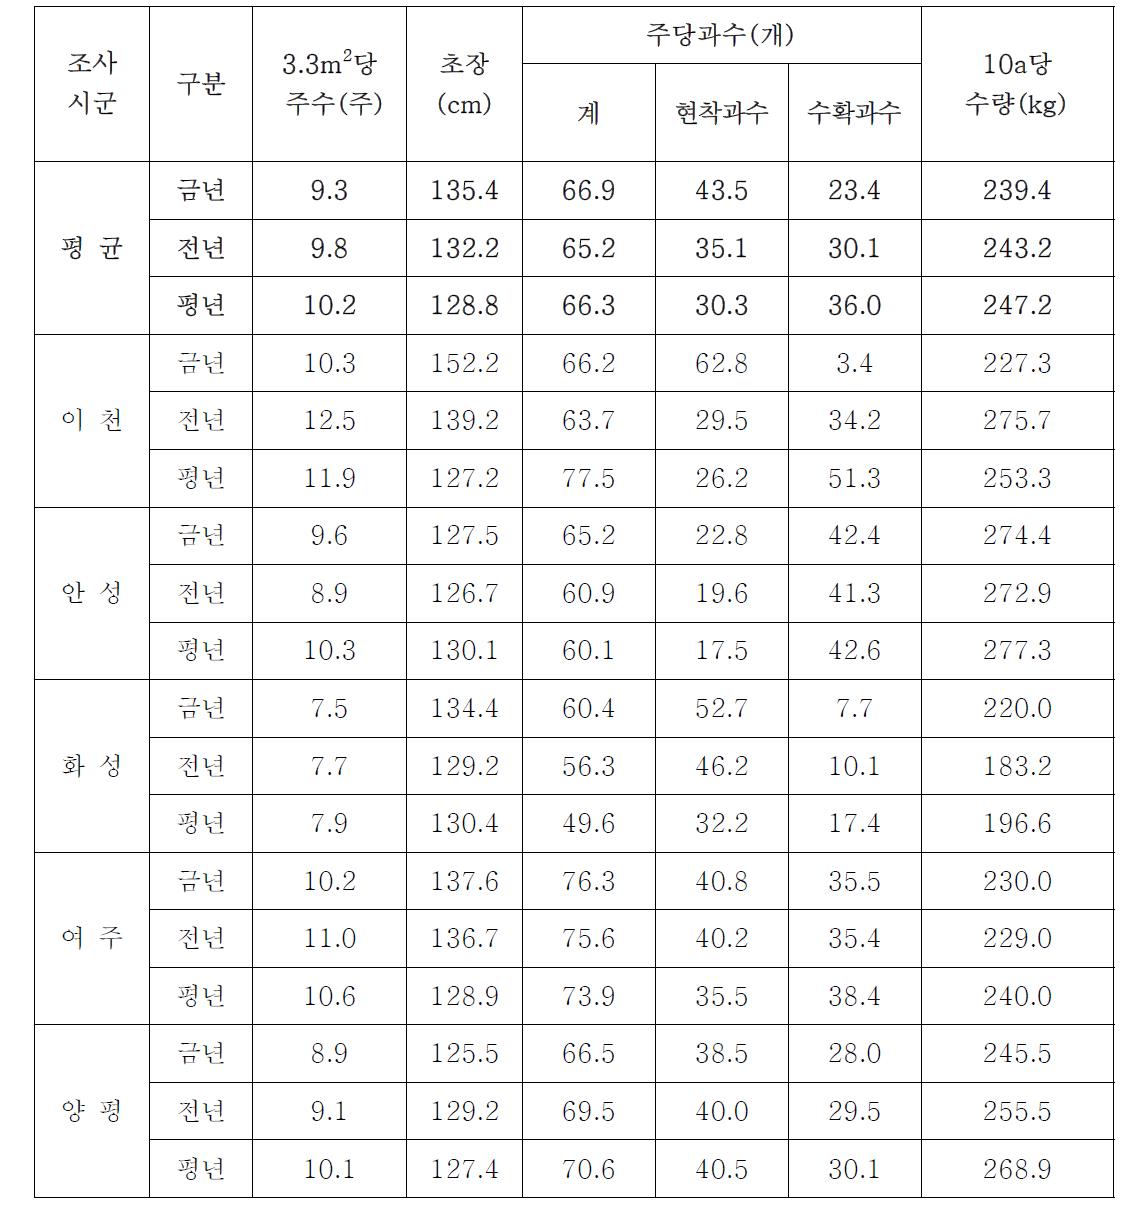 경기 지역 고추 생육 상황 [제 7회 차 조사 : 2013. 9. 16.]